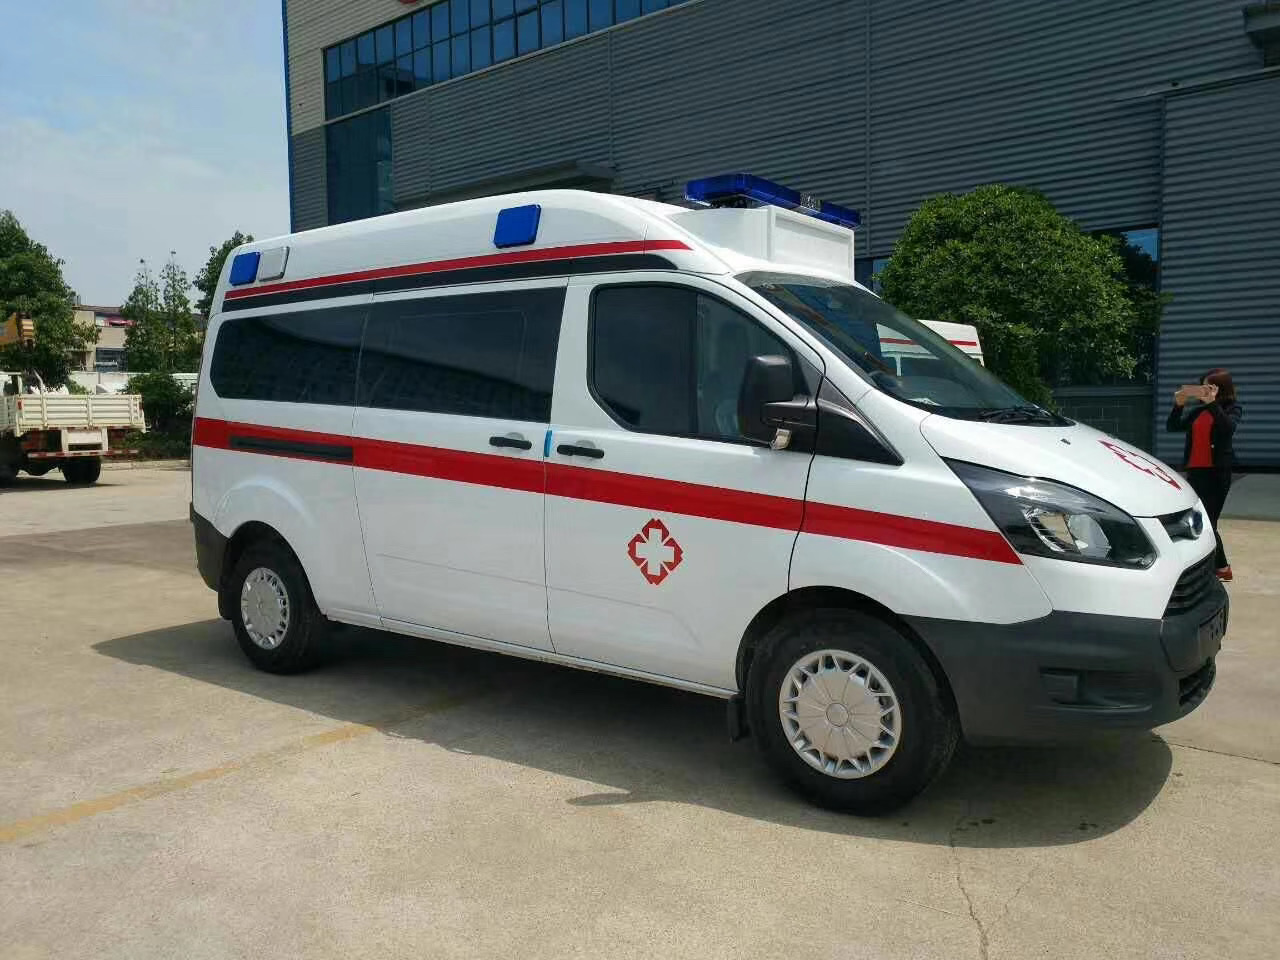 韩城市出院转院救护车